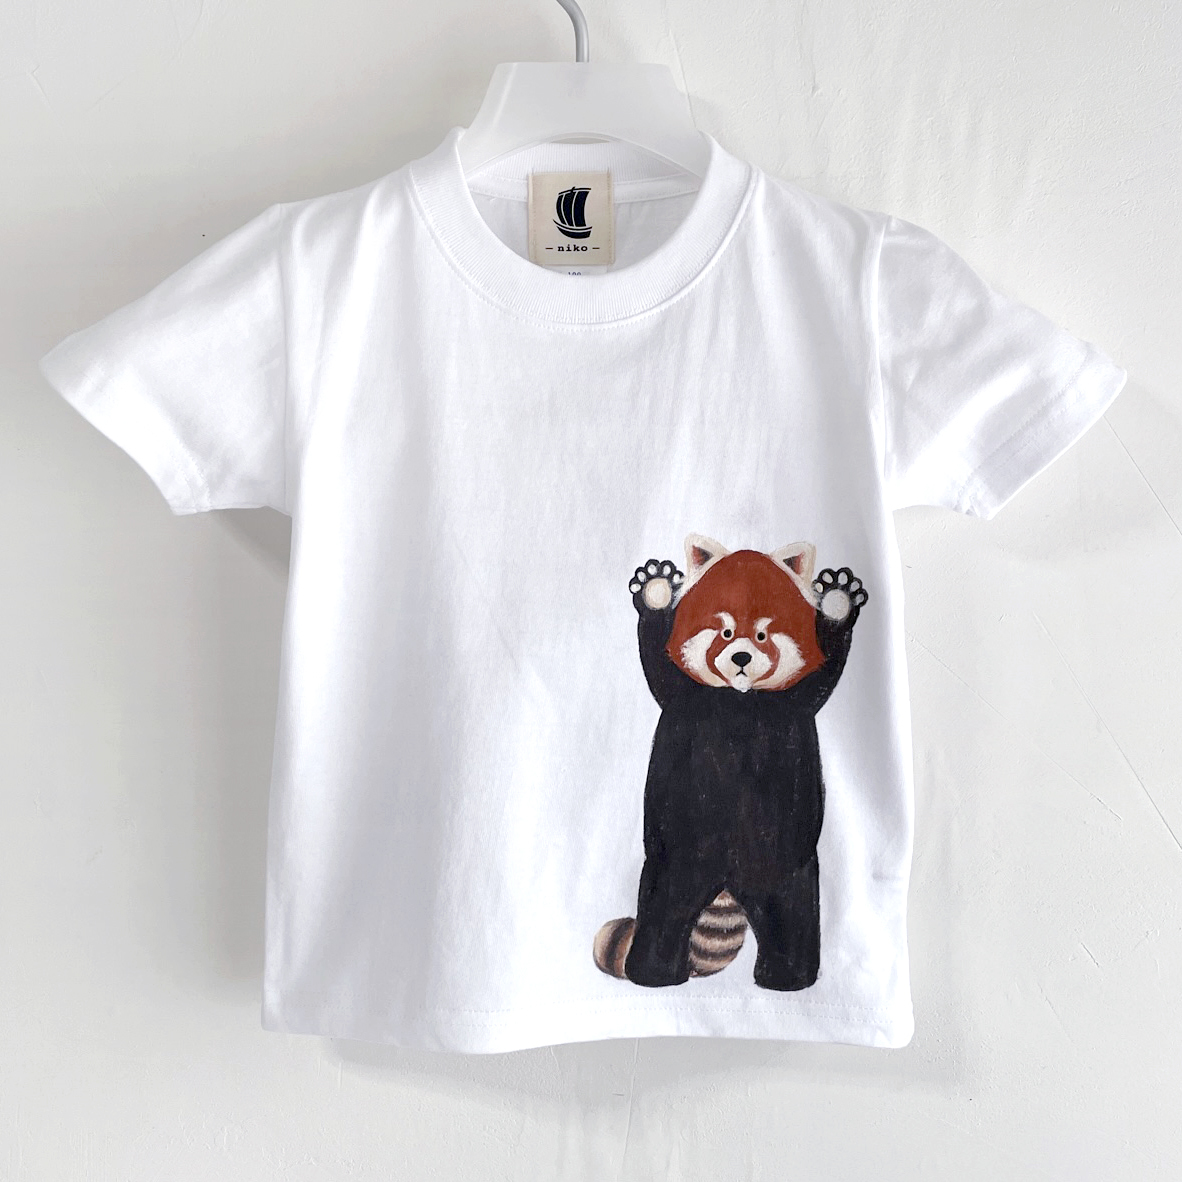 키즈 티셔츠, 사이즈 130, 하얀색, 레드 팬더 패턴 티셔츠, 하얀색, 수공, 손으로 그린 티셔츠, 동물, 상의, 반소매 티셔츠, 130(125~134cm)